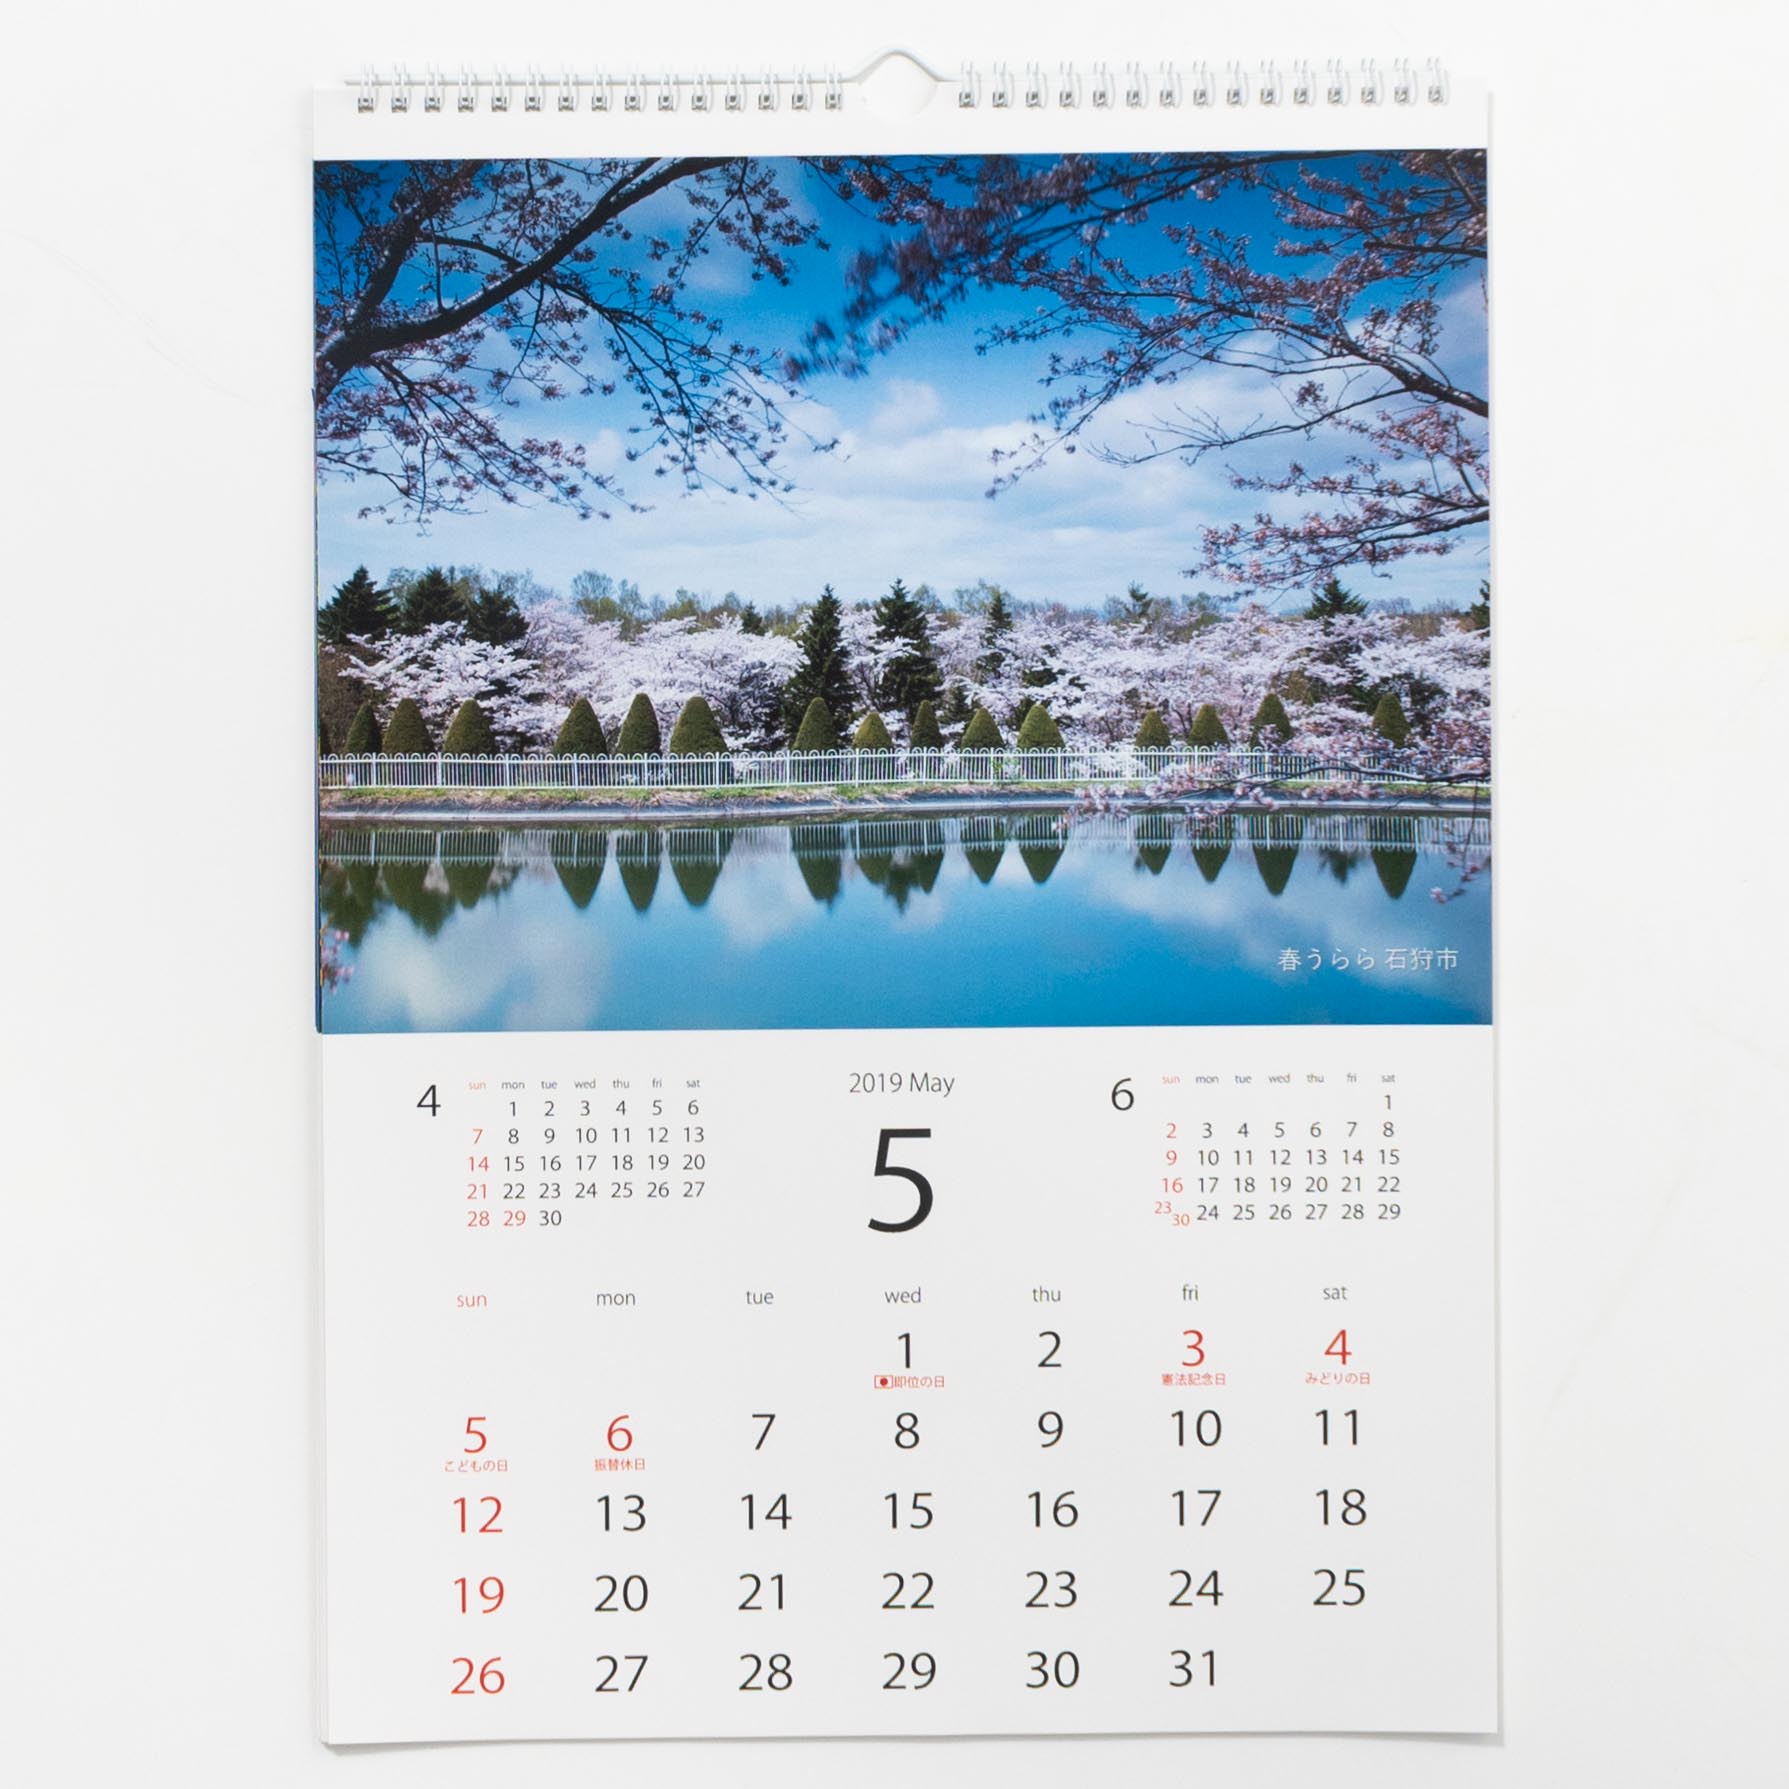 「佐藤　智一 様」製作のオリジナルカレンダー ギャラリー写真2